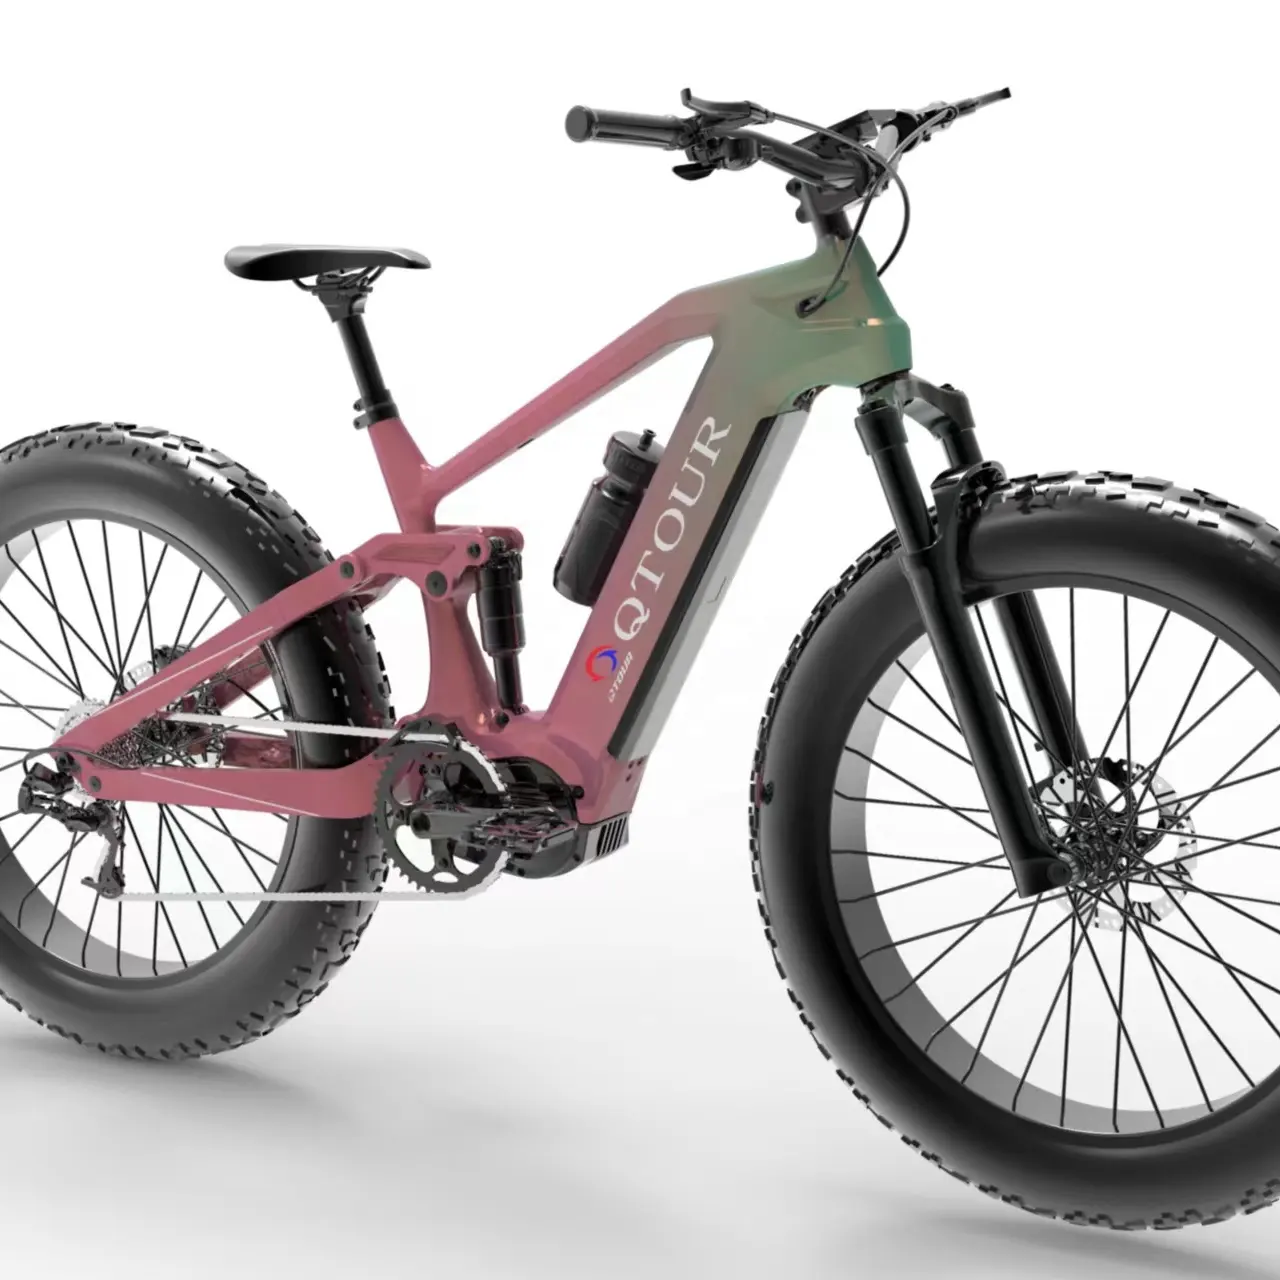 풀 서스펜션 탄소 섬유 전기 산악 자전거 프레임 Bafang M620 팻 타이어 E-MTB AM 프레임